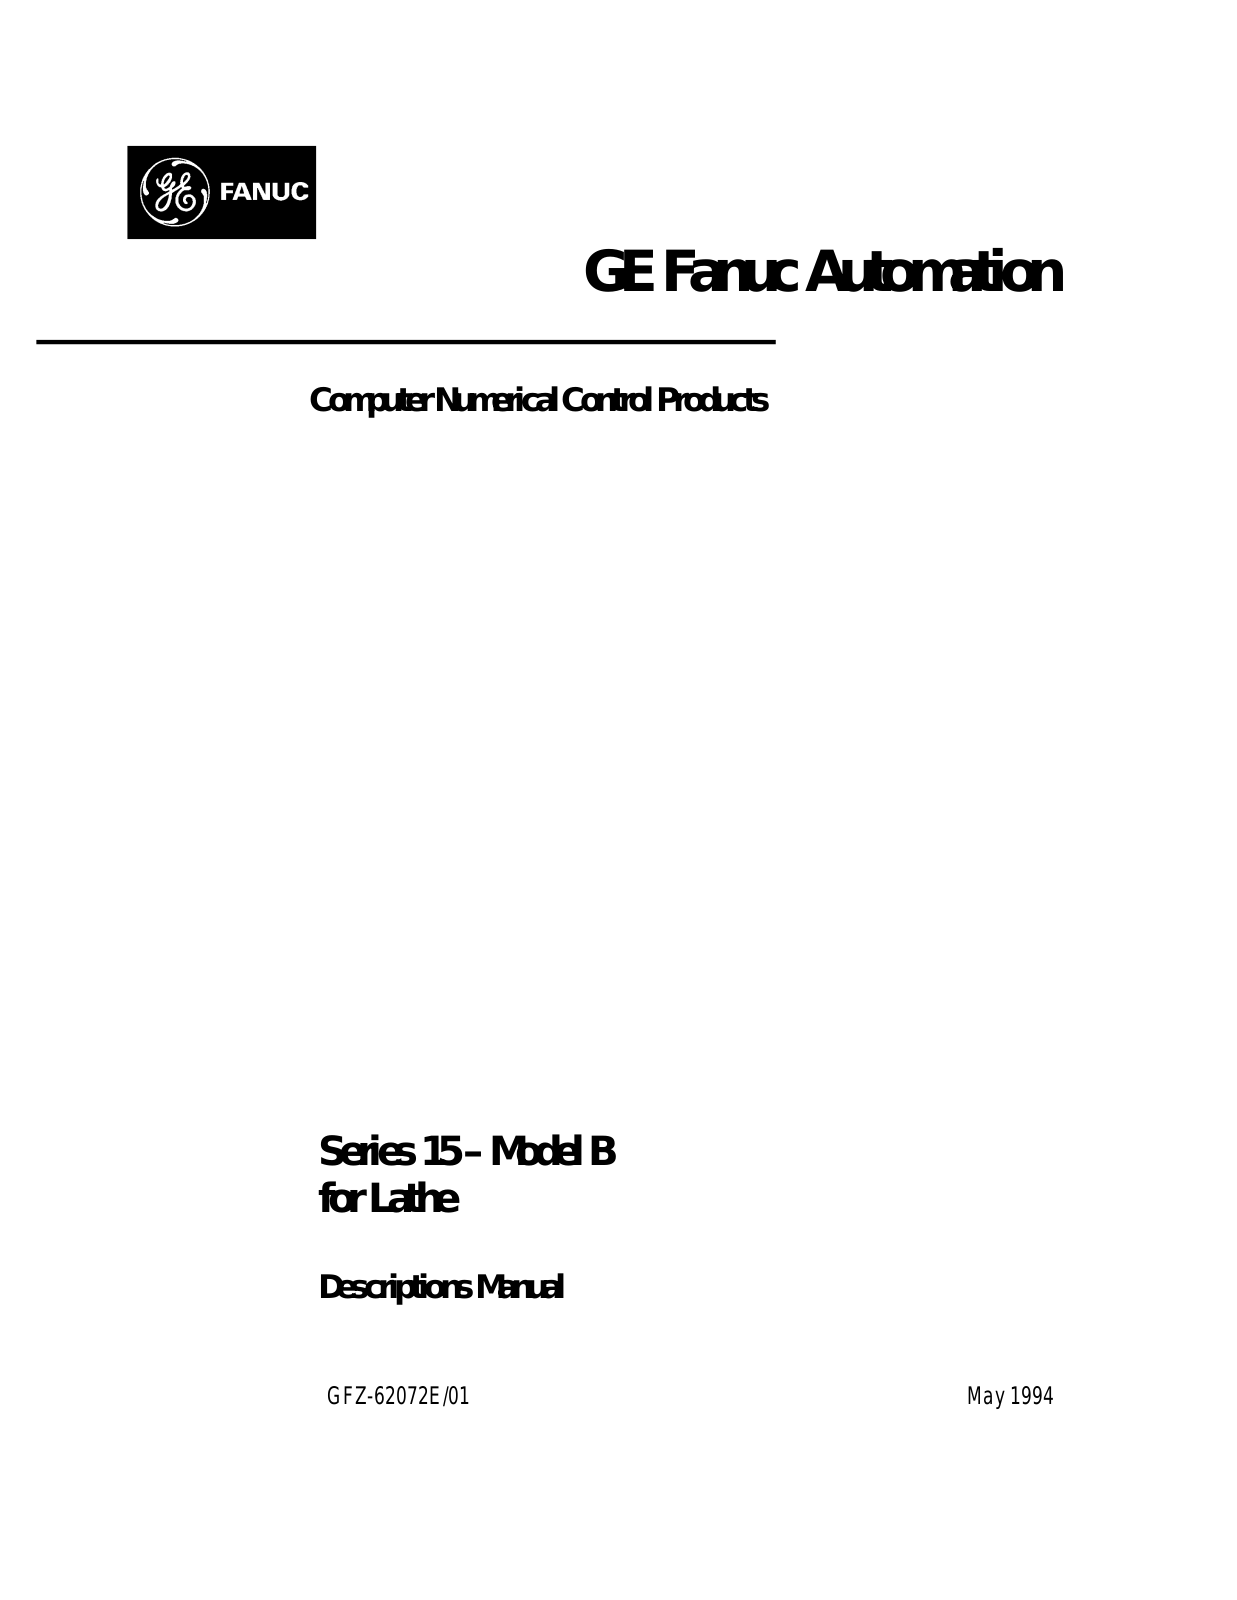 fanuc GFZ-62072E-01 Descriptions Manual